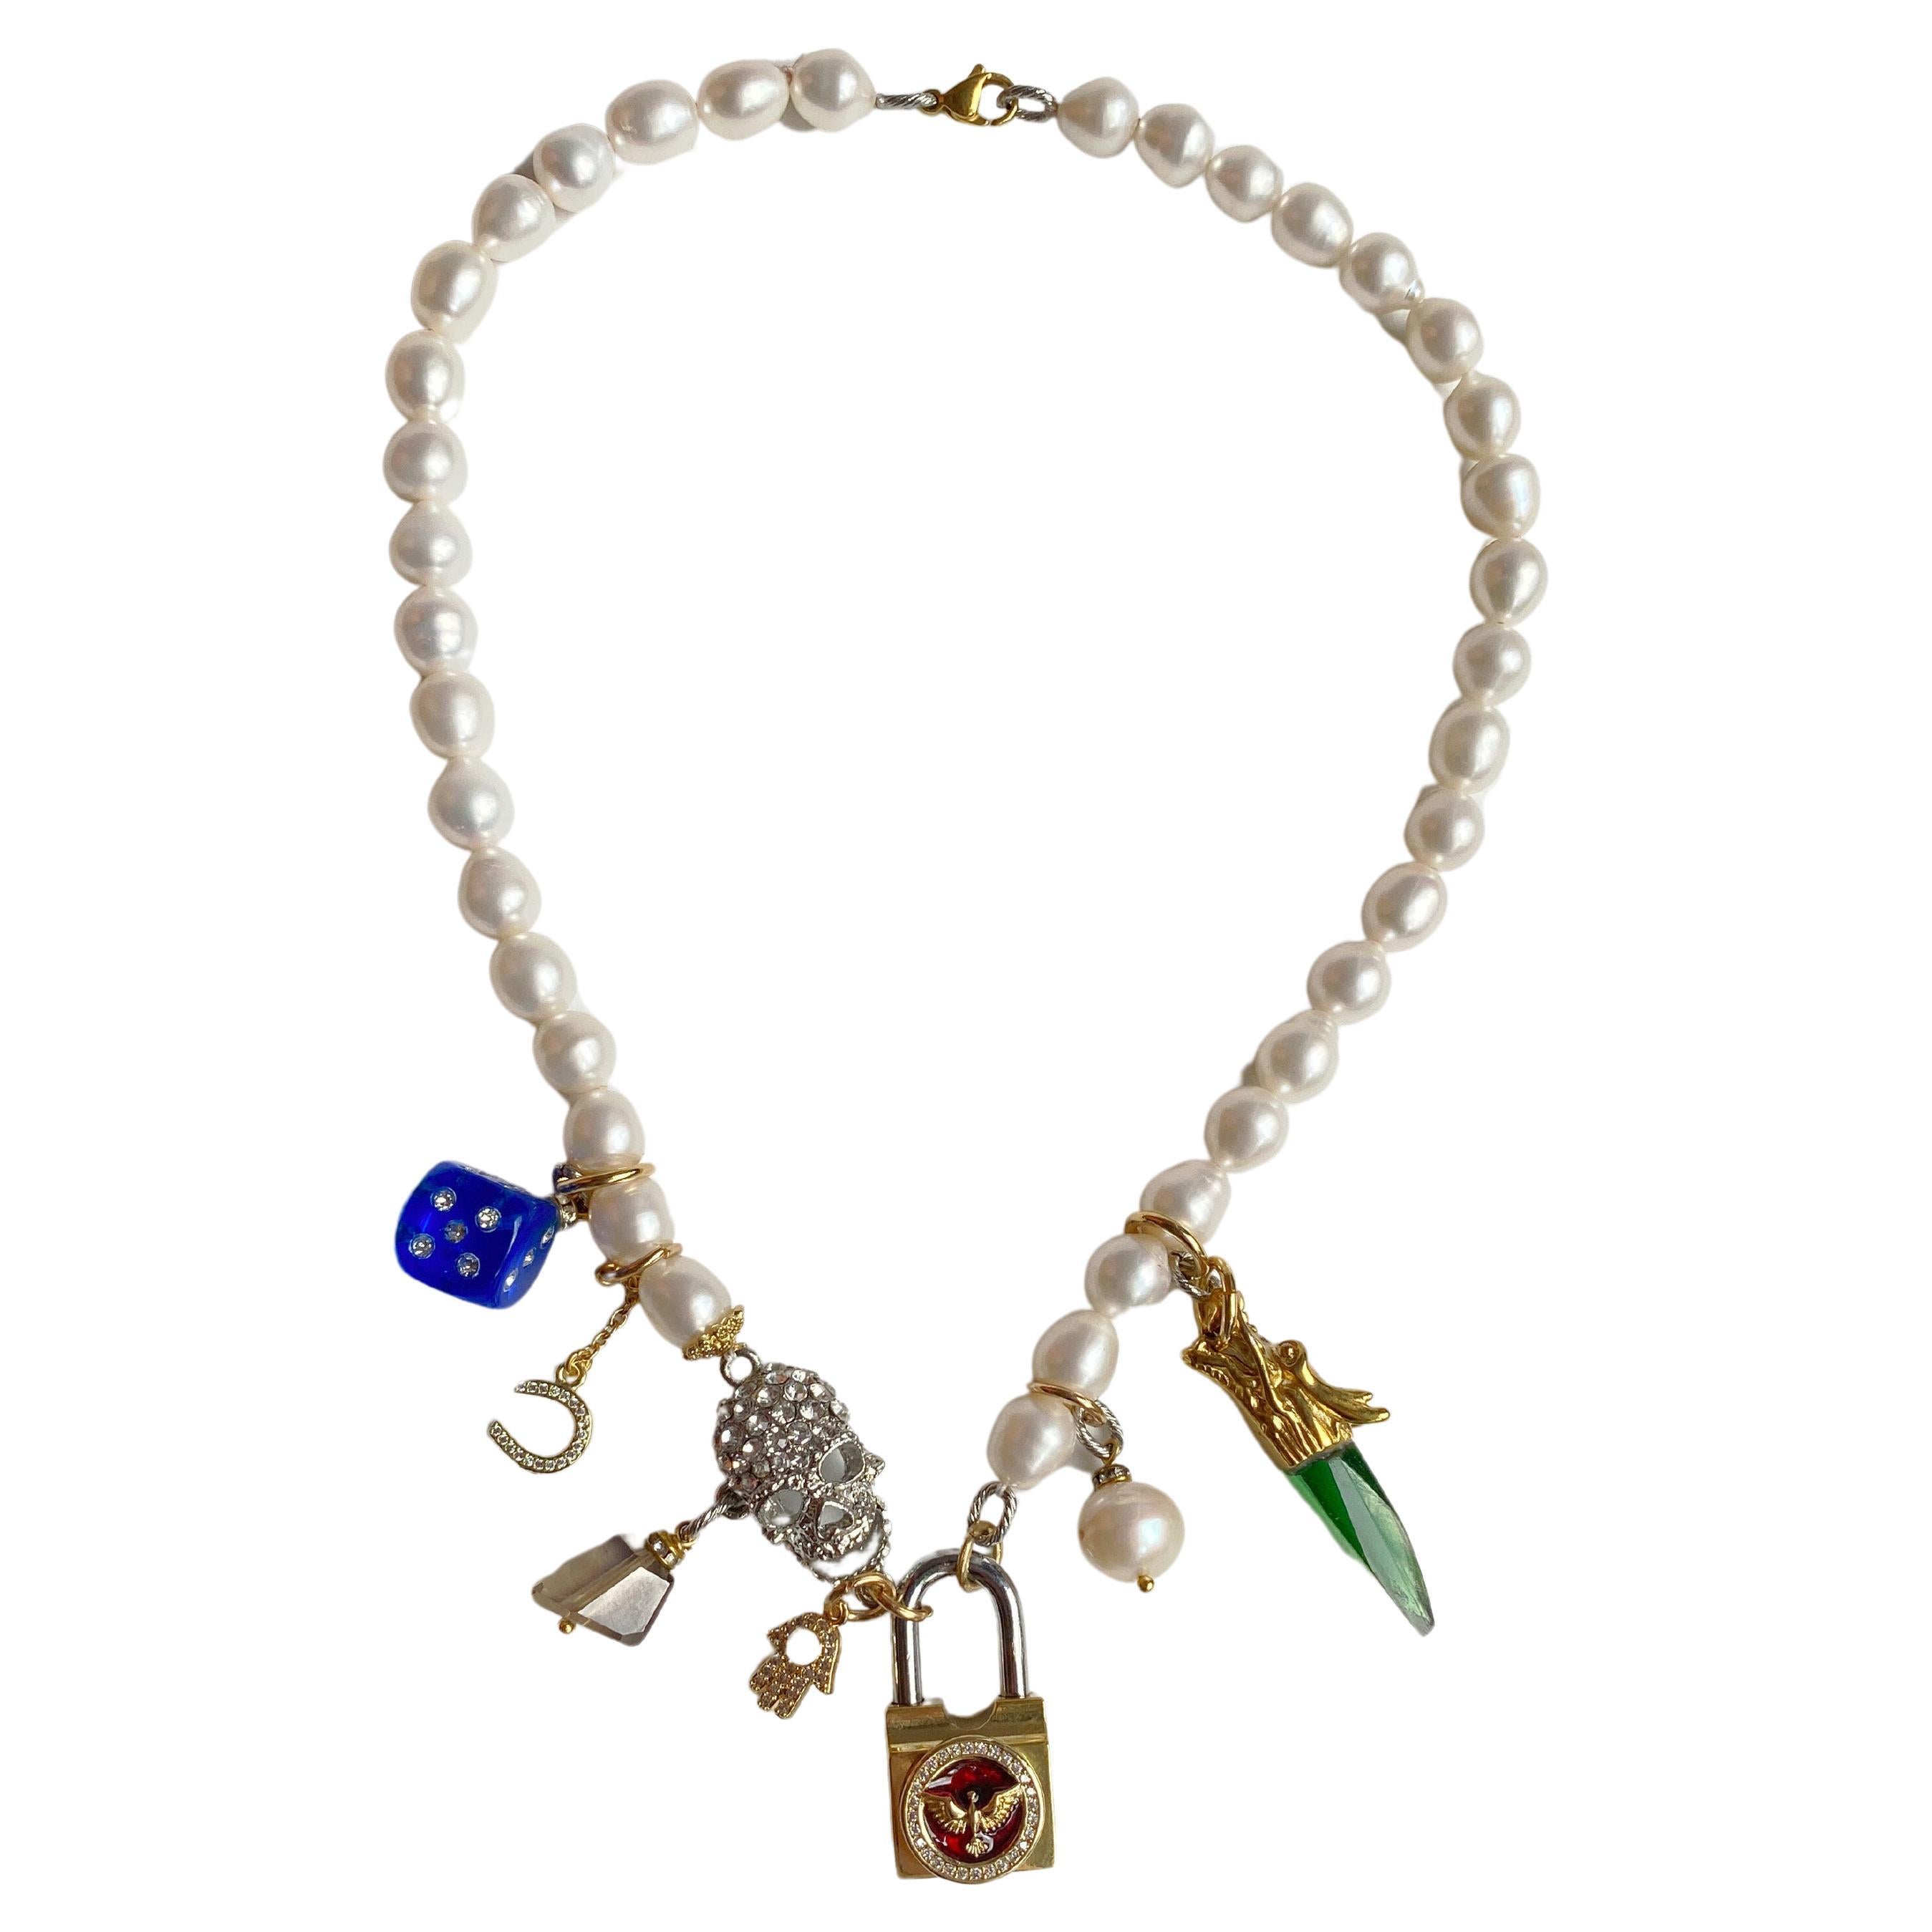 Multicharm-Halskette mit Perle, Totenkopf und goldenem Schloss